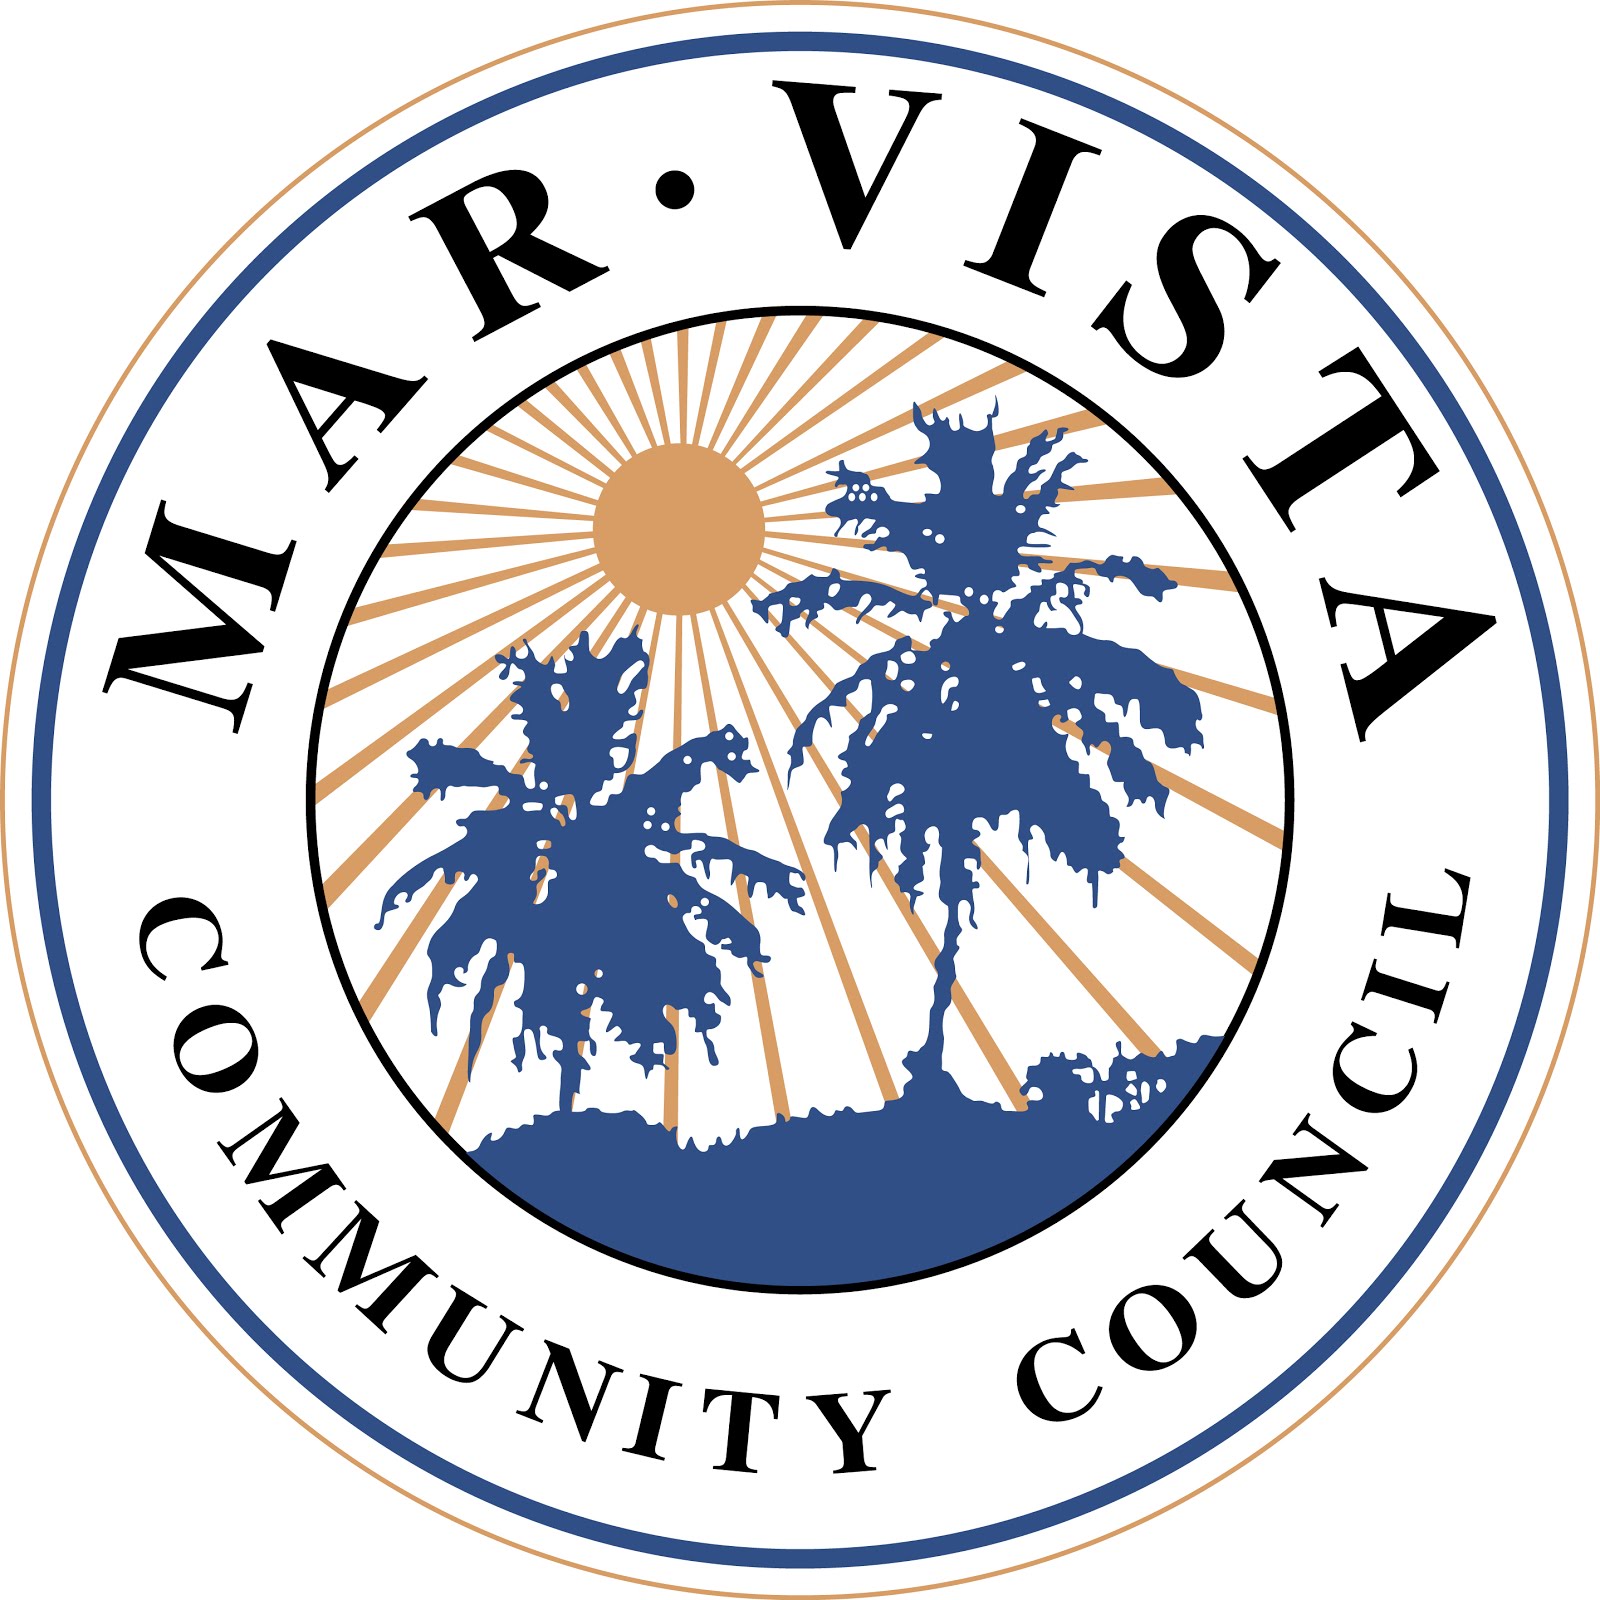 Mar Vista Community Council